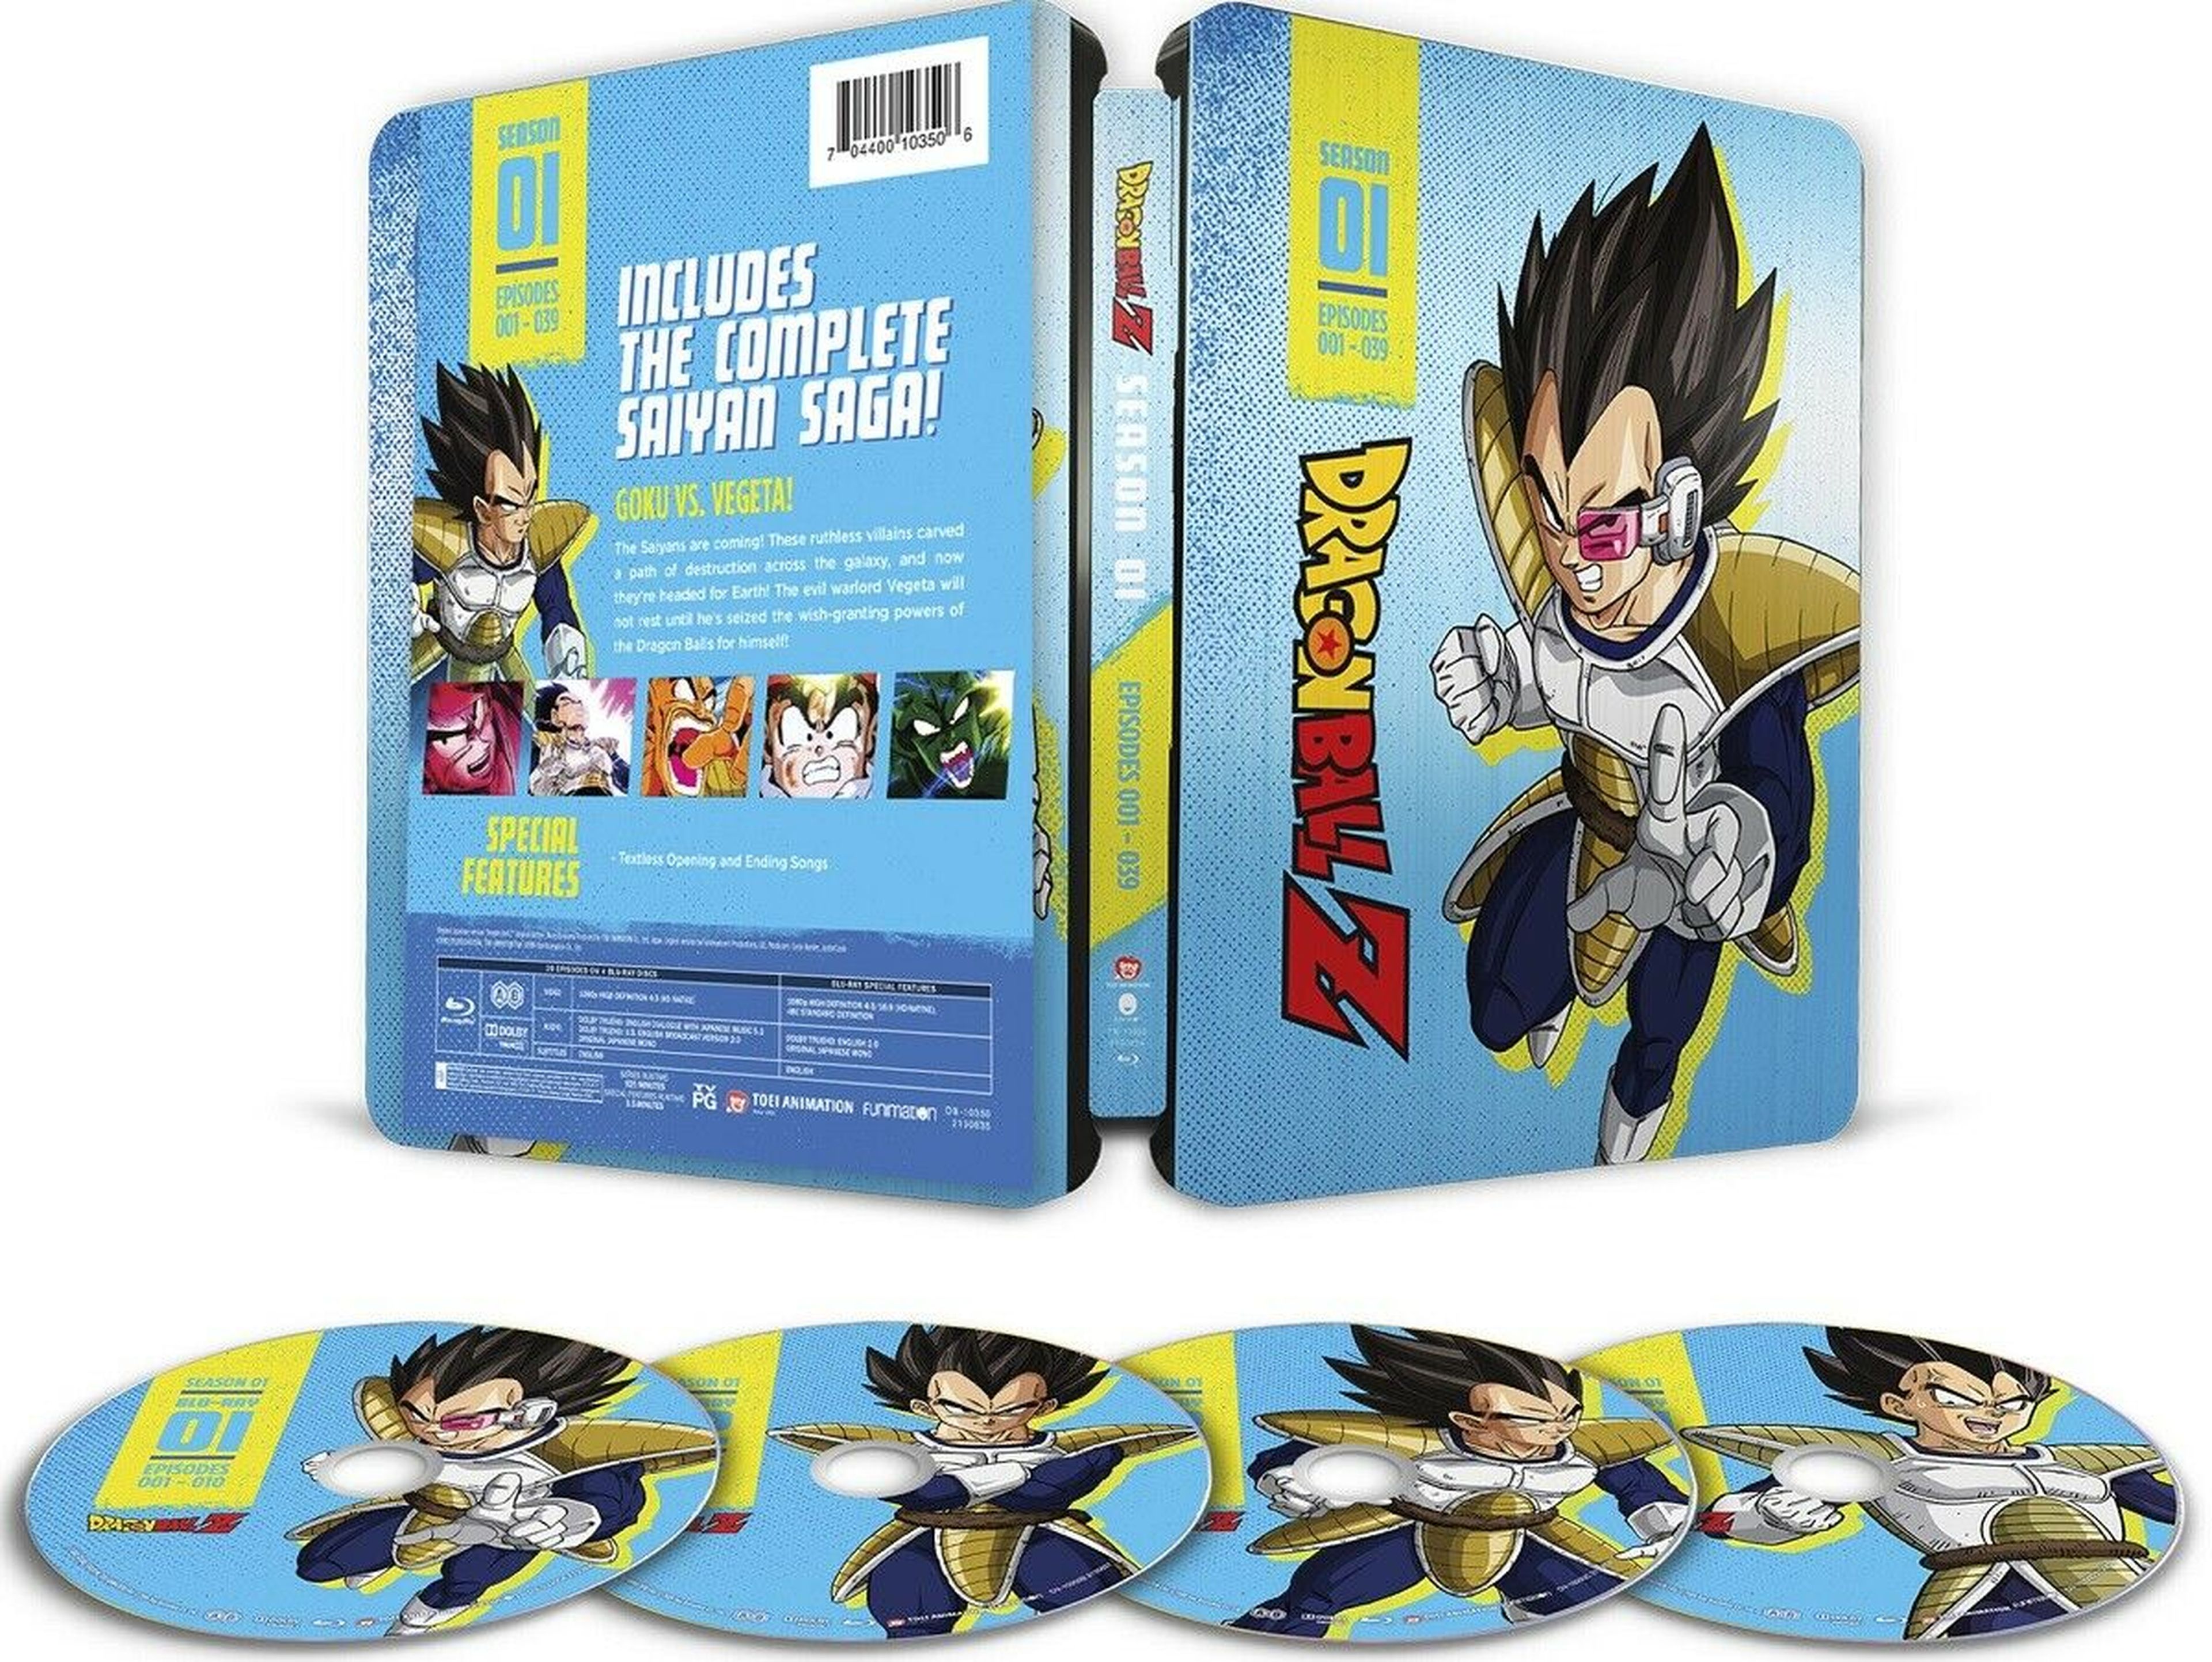 Llegan las steelbooks en Blu-ray de Dragon Ball Z. ¡Goku en alta definición y caja metálica!